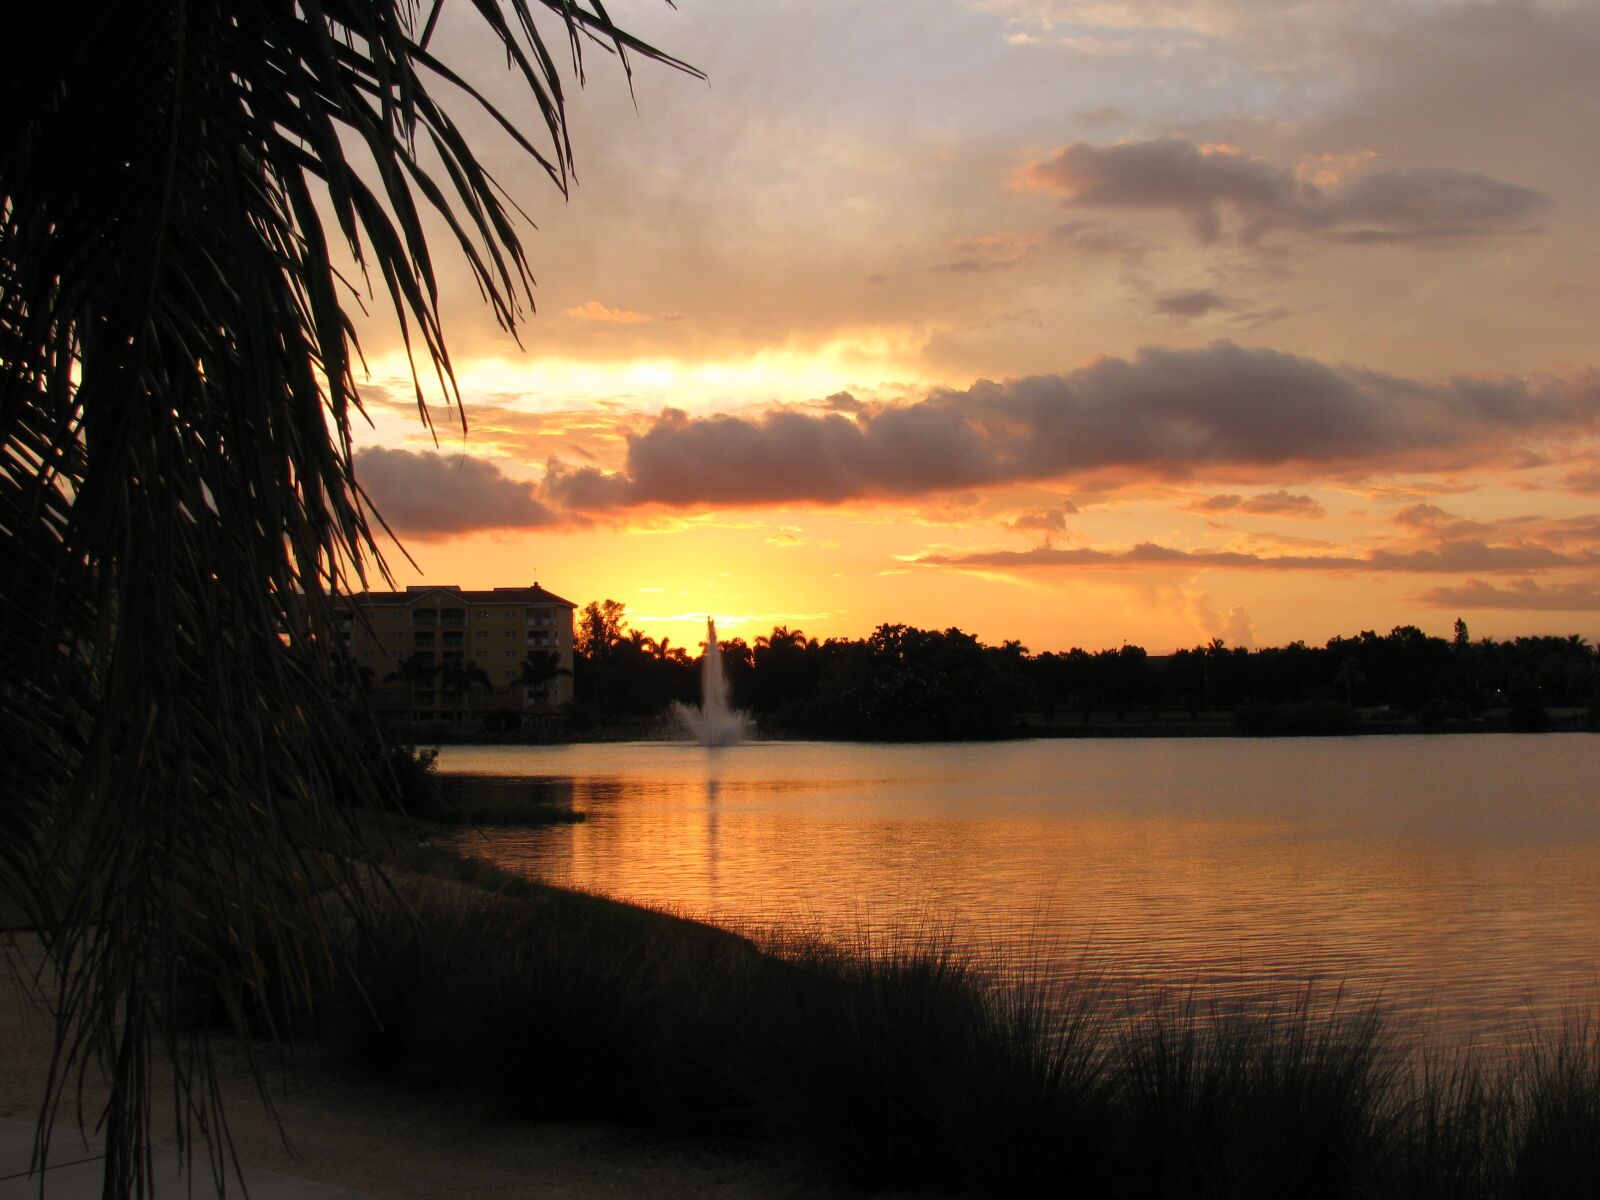 Canon PowerShot SX110 IS sample photo. "Sunset, dusk, nature" photography